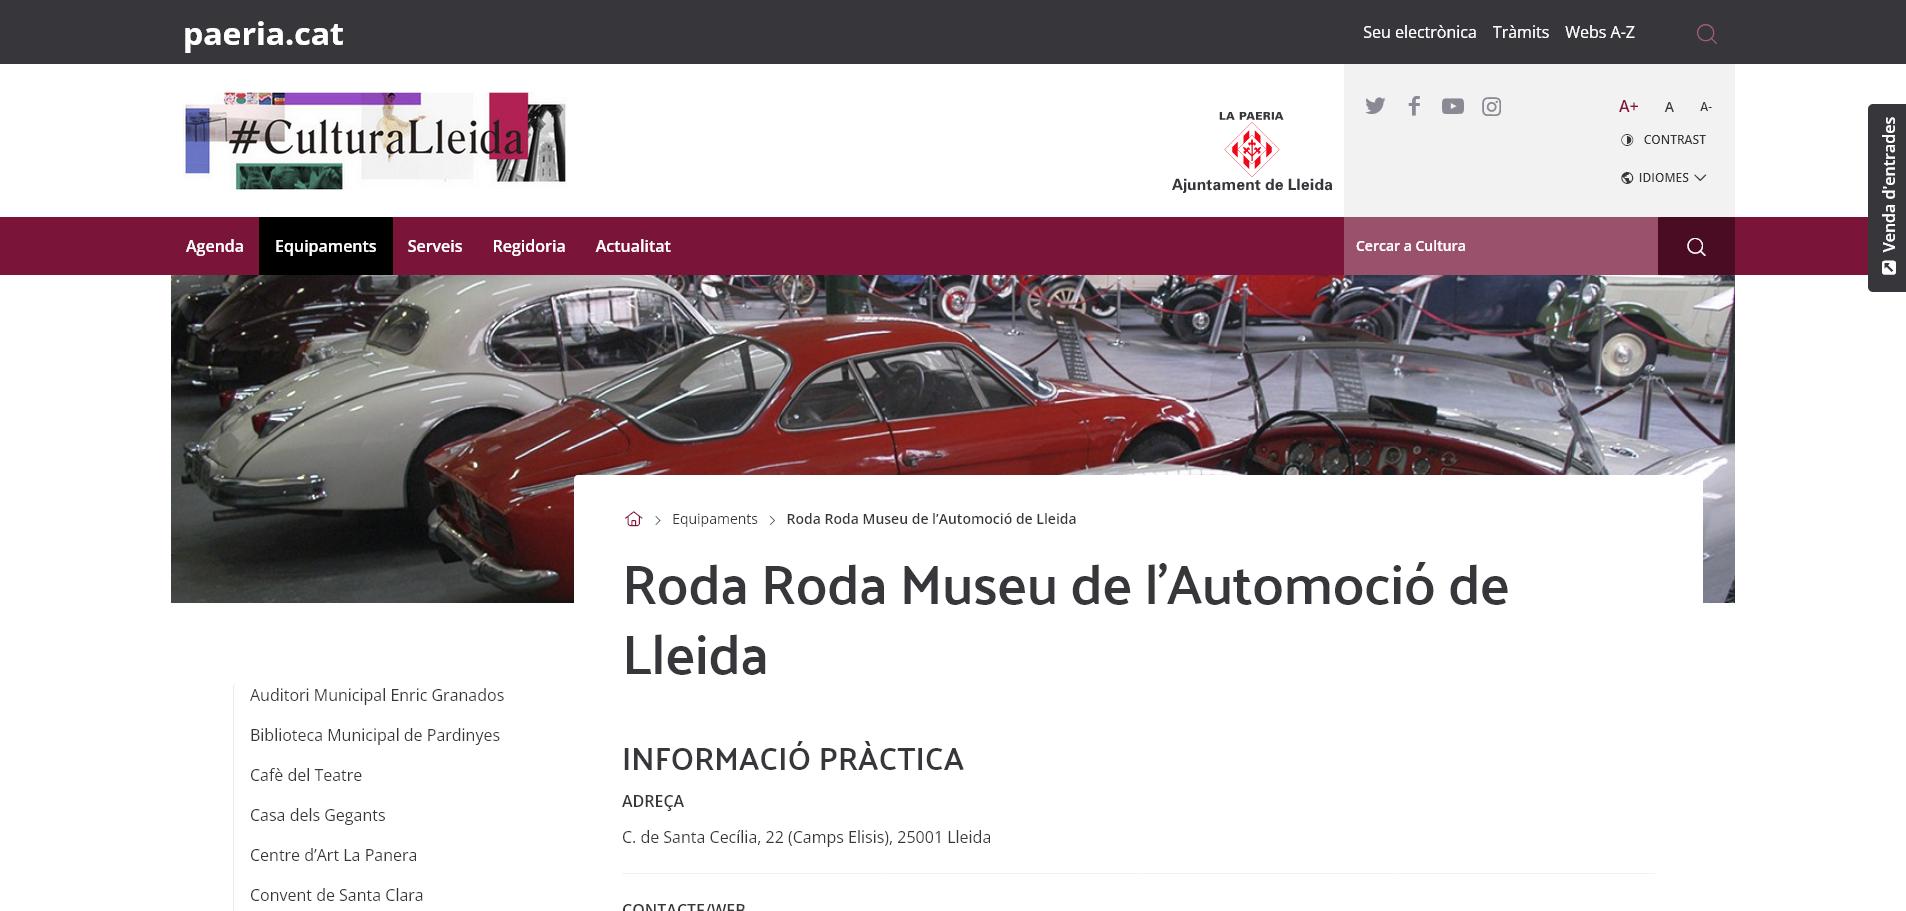 Museo de la automoción Roda Roda